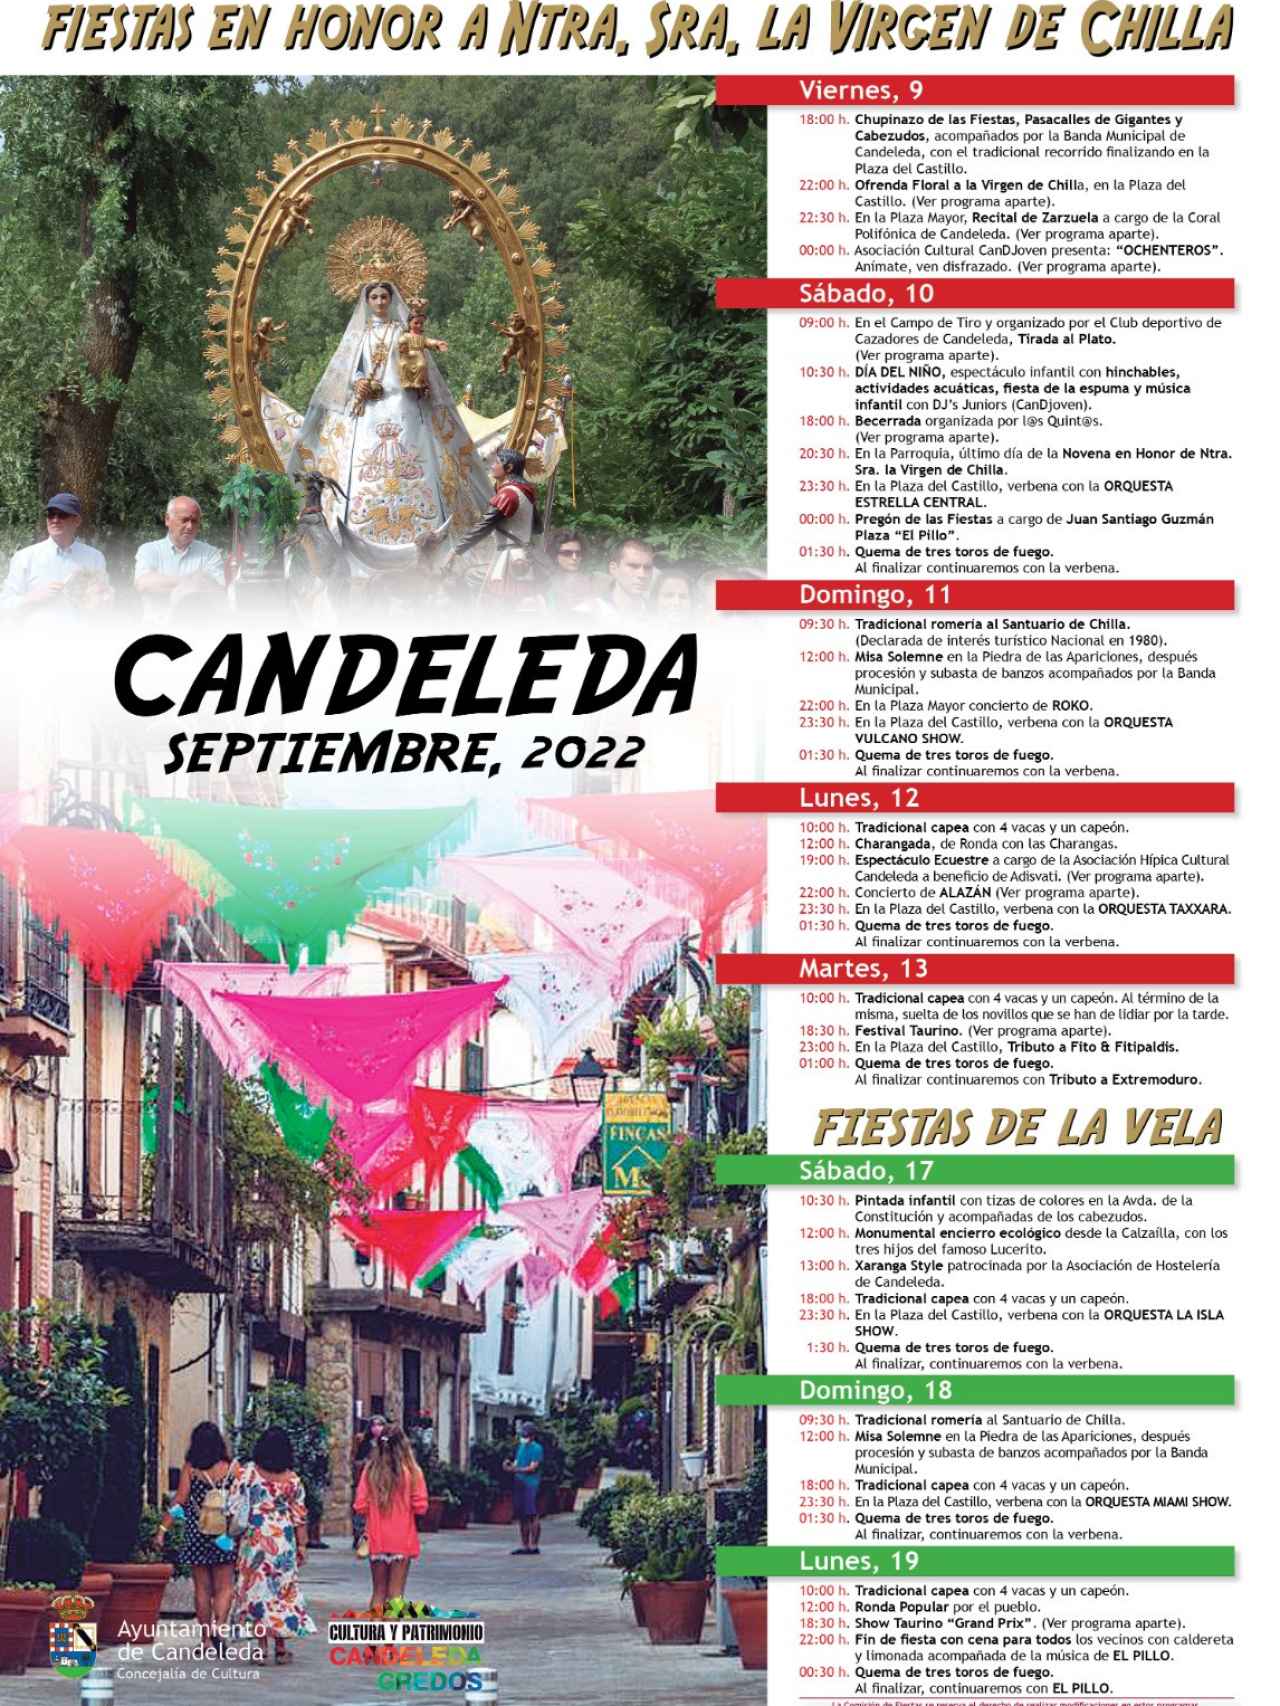 Fiestas en honor a Nuestra Señora de la Virgen de Chilla